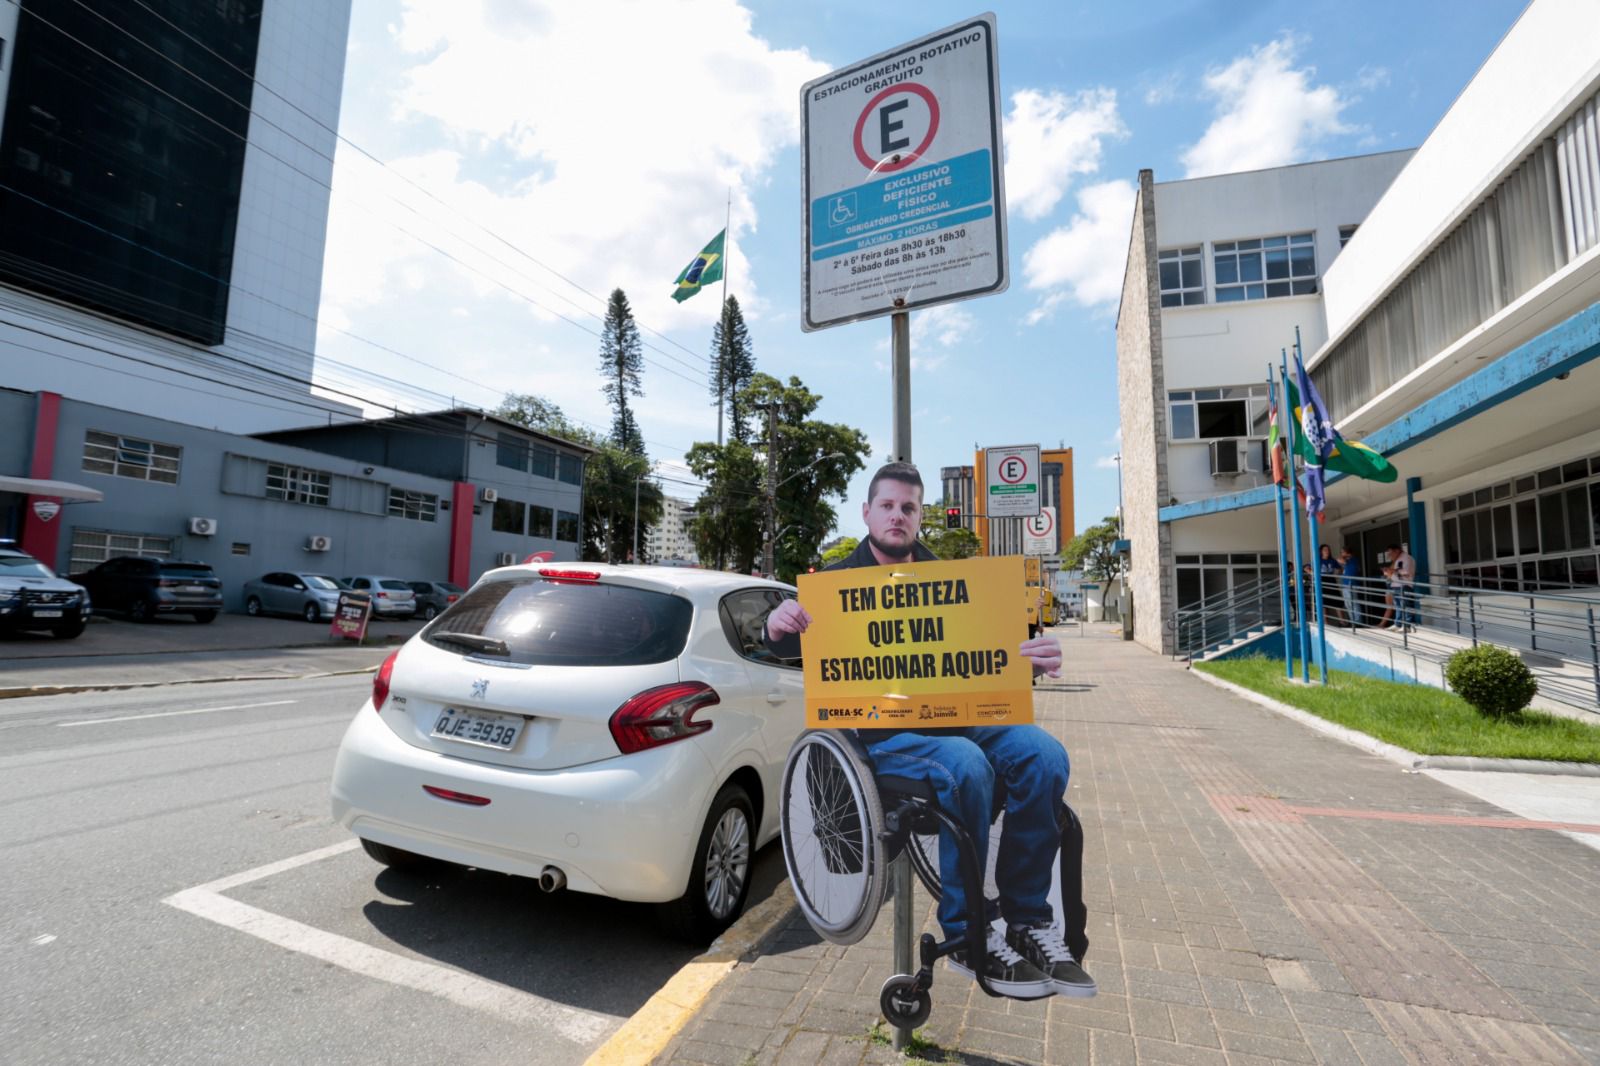 Totens da campanha “Respeite essa vaga” são instalados em Joinville